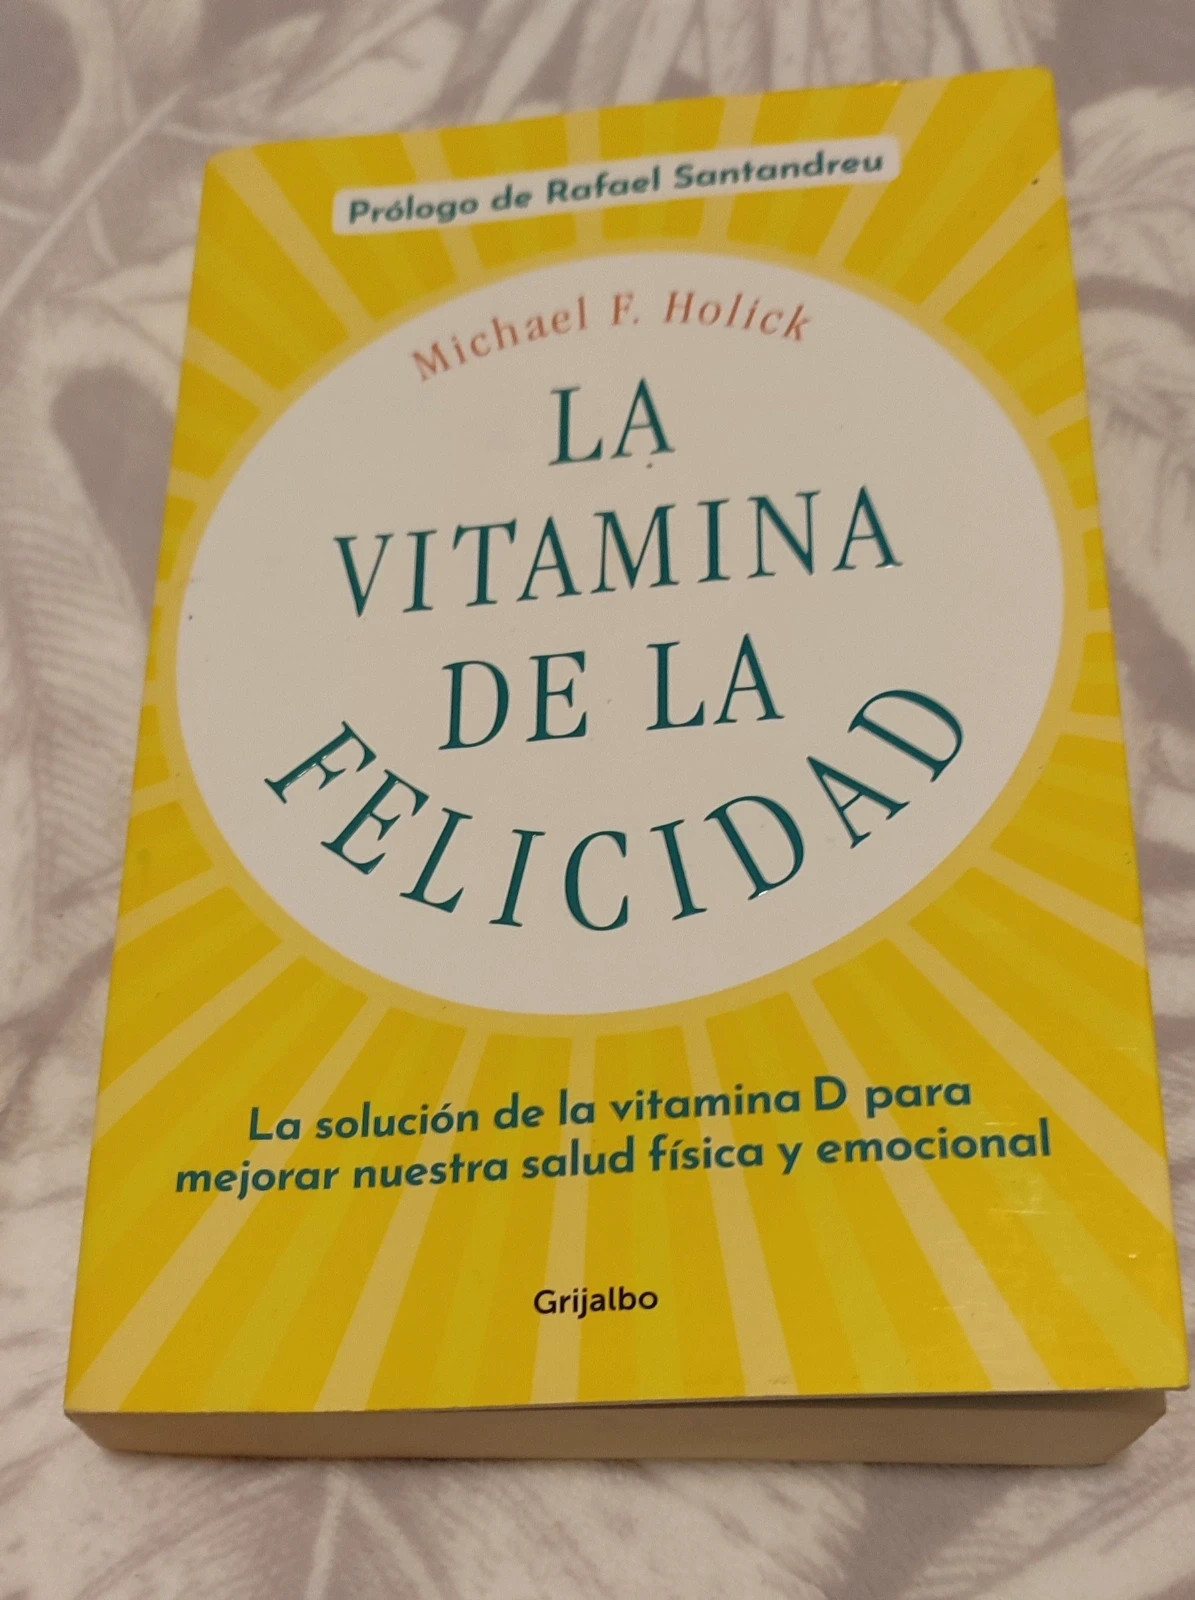 La vitamina de la felicidad (con prólogo de Rafael Santandreu